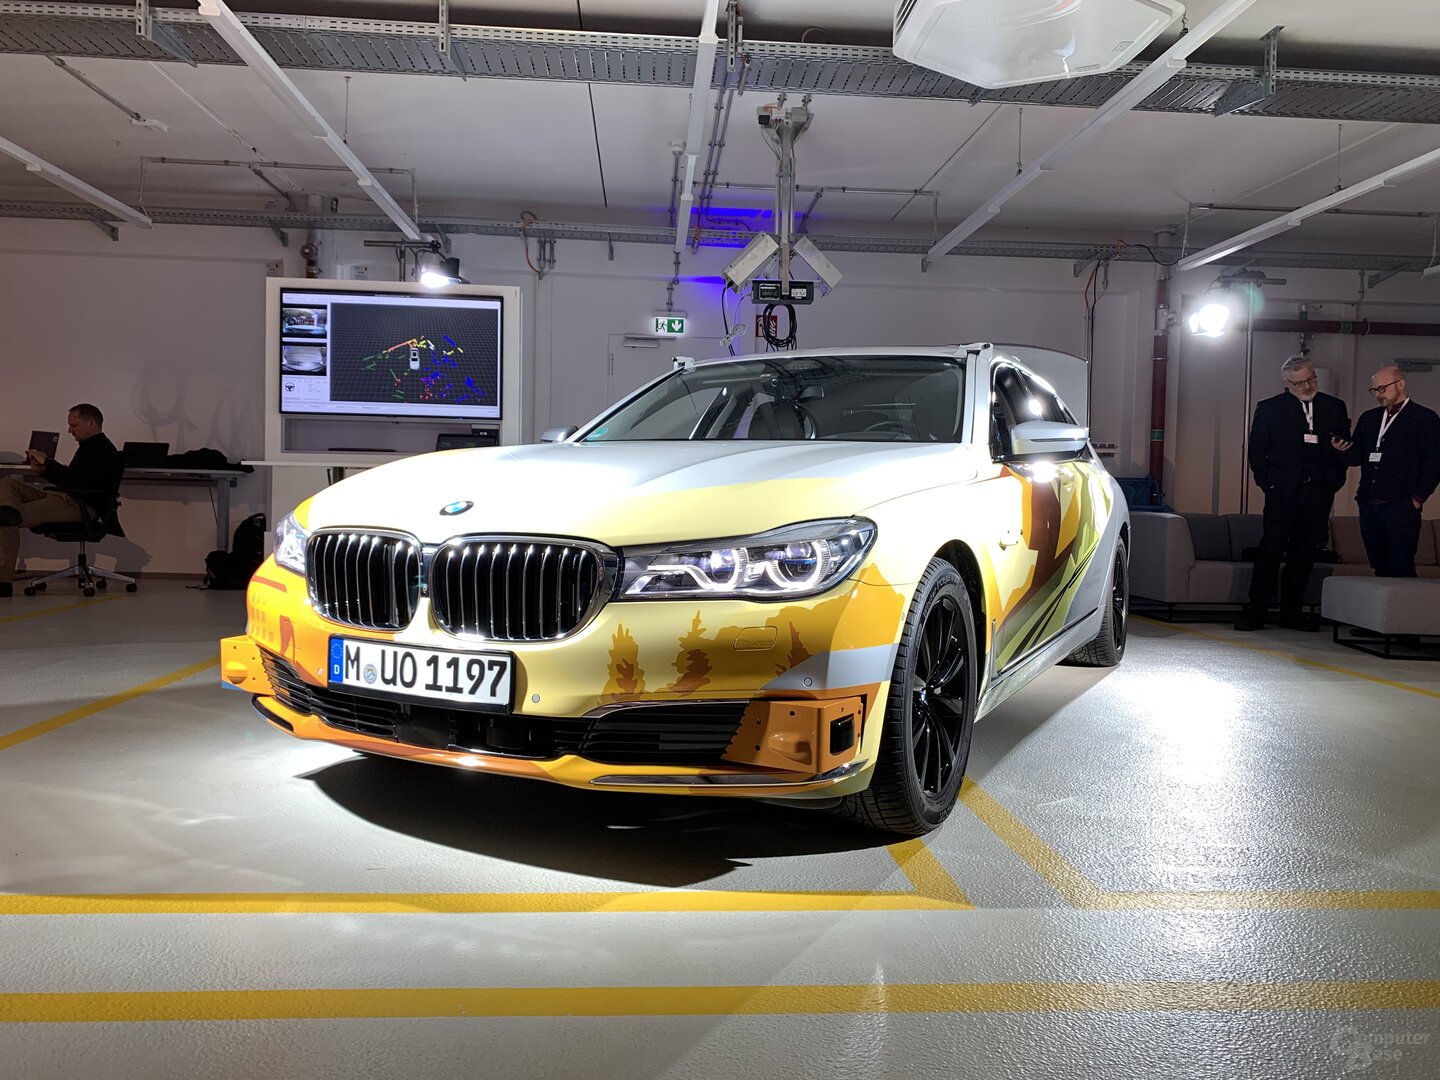 Testfahrzeug aus BMWs autonomer Flotte